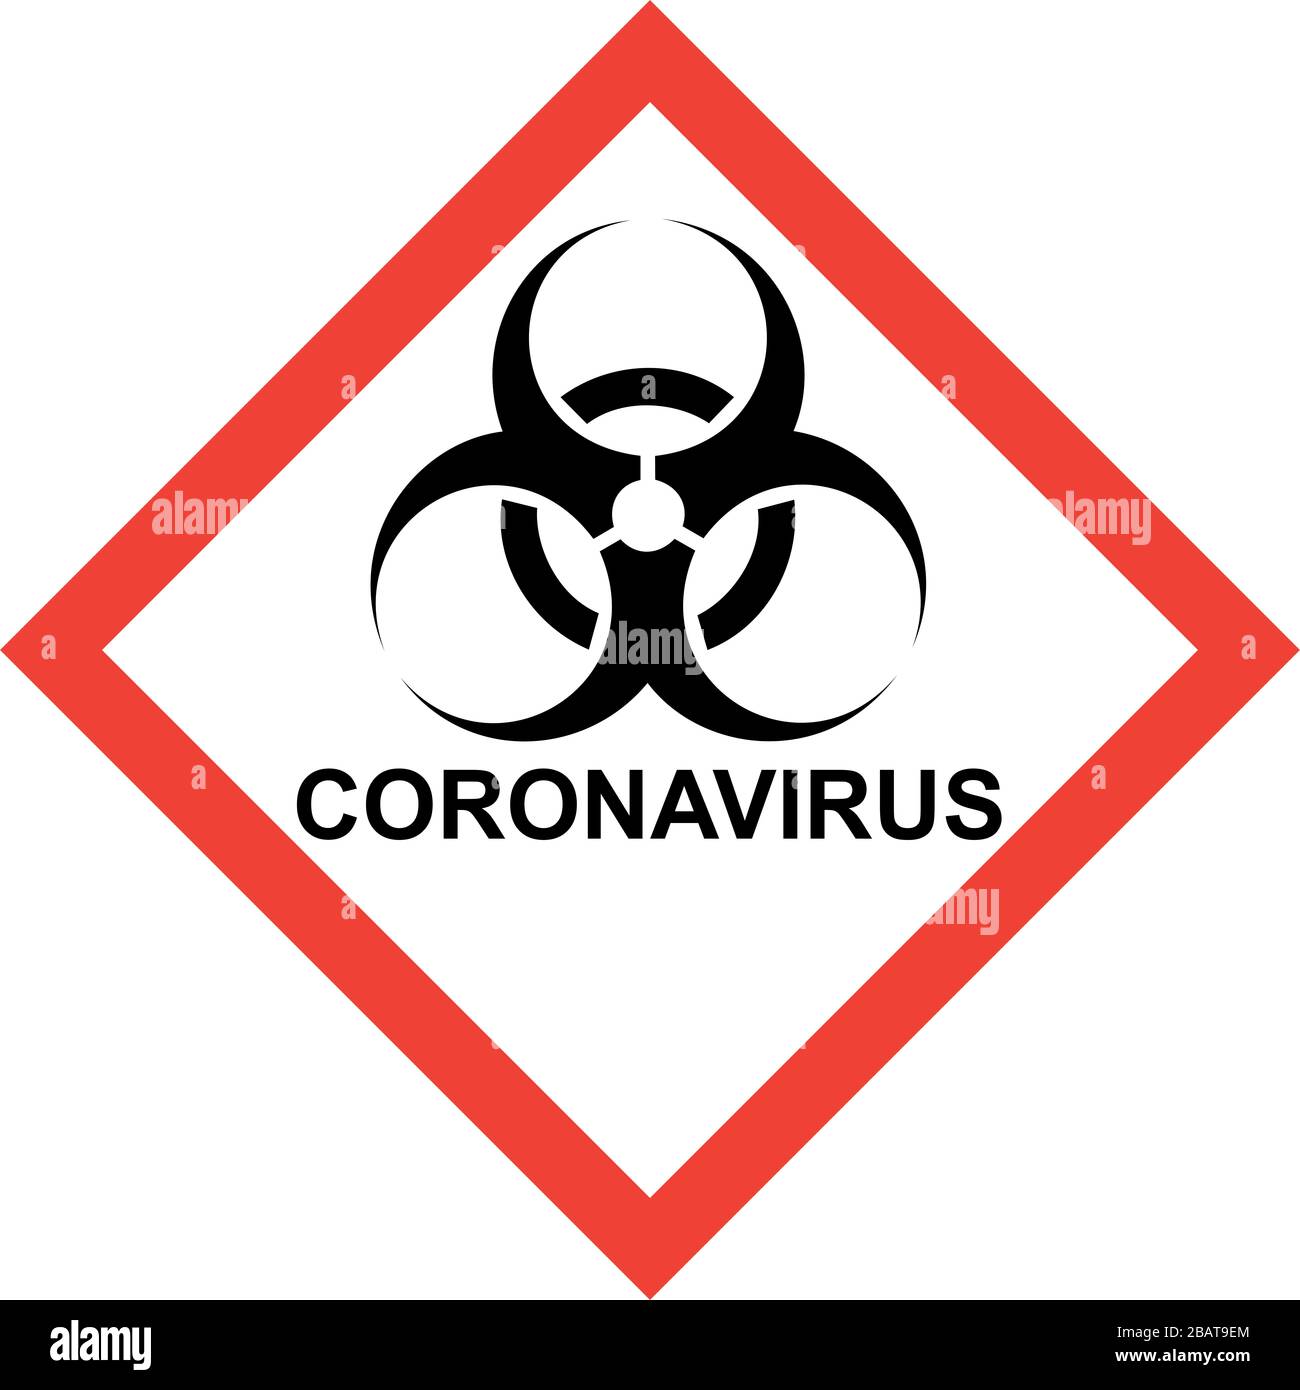 Signe de danger rouge avec symbole de risque biologique et texte SUR LE CORONAVIRUS Banque D'Images